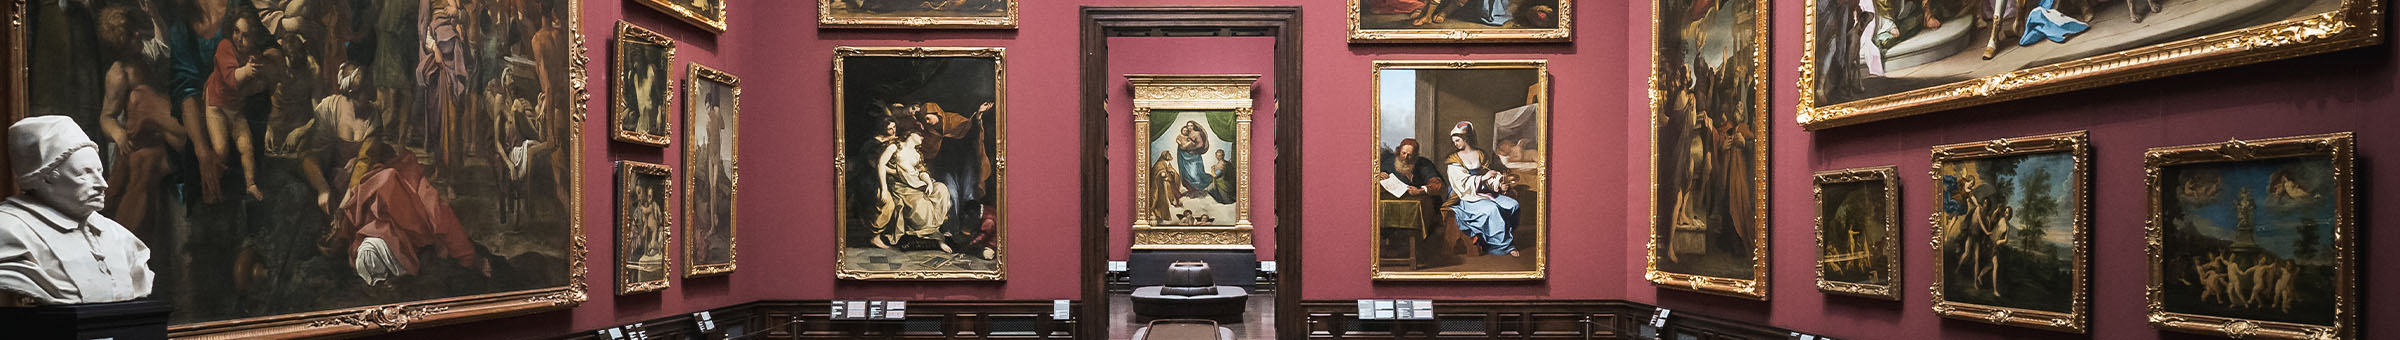 Die Gemäldegalerie Alte Meister mit Blick auf die Sixtinische Madonna von Raffael.